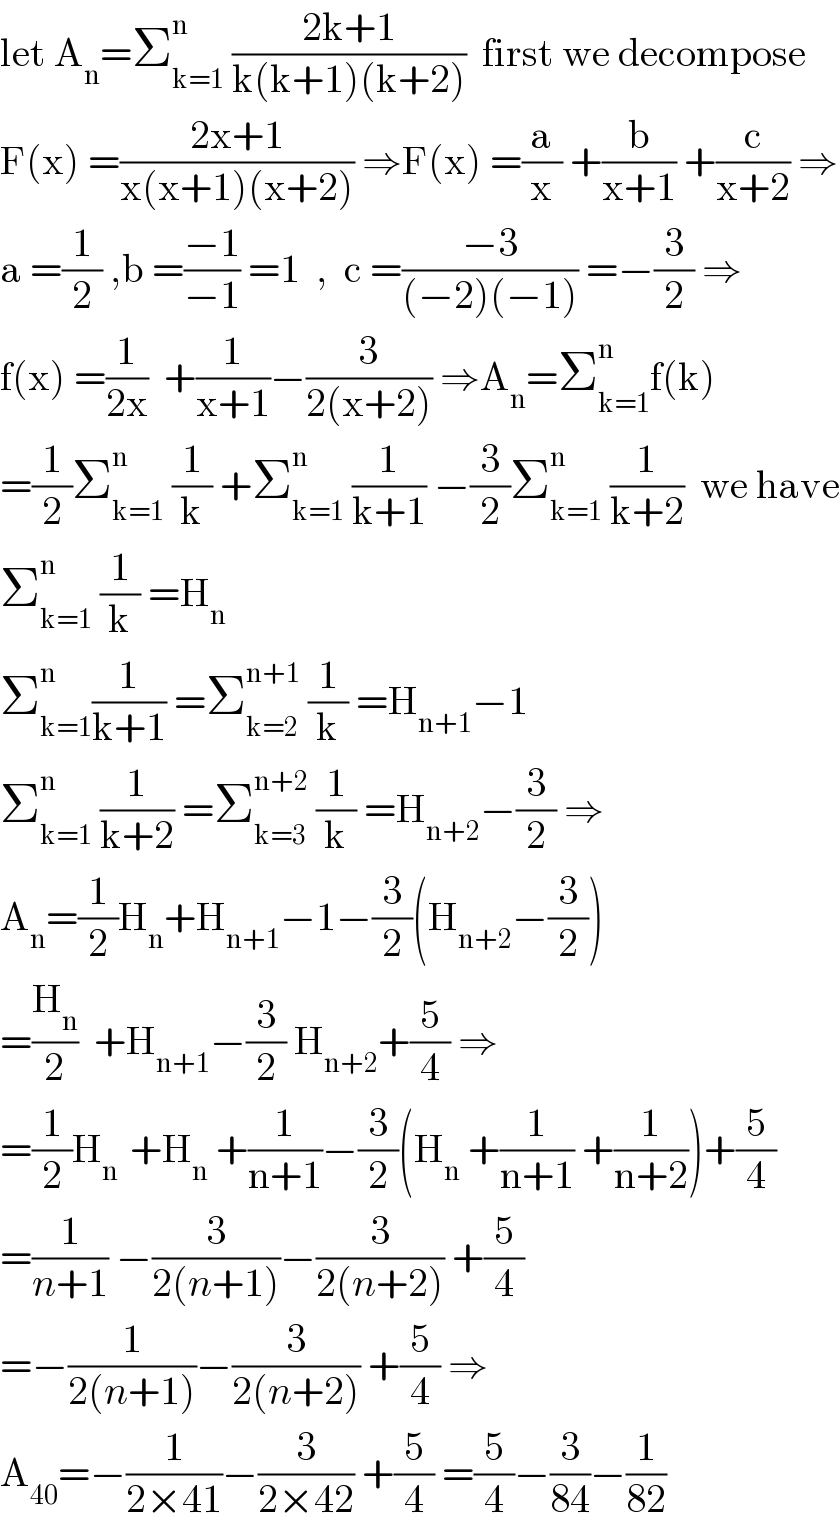 let A_n =Σ_(k=1) ^n  ((2k+1)/(k(k+1)(k+2)))  first we decompose  F(x) =((2x+1)/(x(x+1)(x+2))) ⇒F(x) =(a/x) +(b/(x+1)) +(c/(x+2)) ⇒  a =(1/2) ,b =((−1)/(−1)) =1  ,  c =((−3)/((−2)(−1))) =−(3/2) ⇒  f(x) =(1/(2x))  +(1/(x+1))−(3/(2(x+2))) ⇒A_n =Σ_(k=1) ^n f(k)  =(1/2)Σ_(k=1) ^n  (1/k) +Σ_(k=1) ^n  (1/(k+1)) −(3/2)Σ_(k=1) ^n  (1/(k+2))  we have  Σ_(k=1) ^n  (1/k) =H_n   Σ_(k=1) ^n (1/(k+1)) =Σ_(k=2) ^(n+1)  (1/k) =H_(n+1) −1  Σ_(k=1) ^n  (1/(k+2)) =Σ_(k=3) ^(n+2)  (1/k) =H_(n+2) −(3/2) ⇒  A_n =(1/2)H_n +H_(n+1) −1−(3/2)(H_(n+2) −(3/2))  =(H_n /2)  +H_(n+1) −(3/2) H_(n+2) +(5/4) ⇒  =(1/2)H_(n )  +H_n  +(1/(n+1))−(3/2)(H_n  +(1/(n+1)) +(1/(n+2)))+(5/4)  =(1/(n+1)) −(3/(2(n+1)))−(3/(2(n+2))) +(5/4)  =−(1/(2(n+1)))−(3/(2(n+2))) +(5/4) ⇒  A_(40) =−(1/(2×41))−(3/(2×42)) +(5/4) =(5/4)−(3/(84))−(1/(82))  